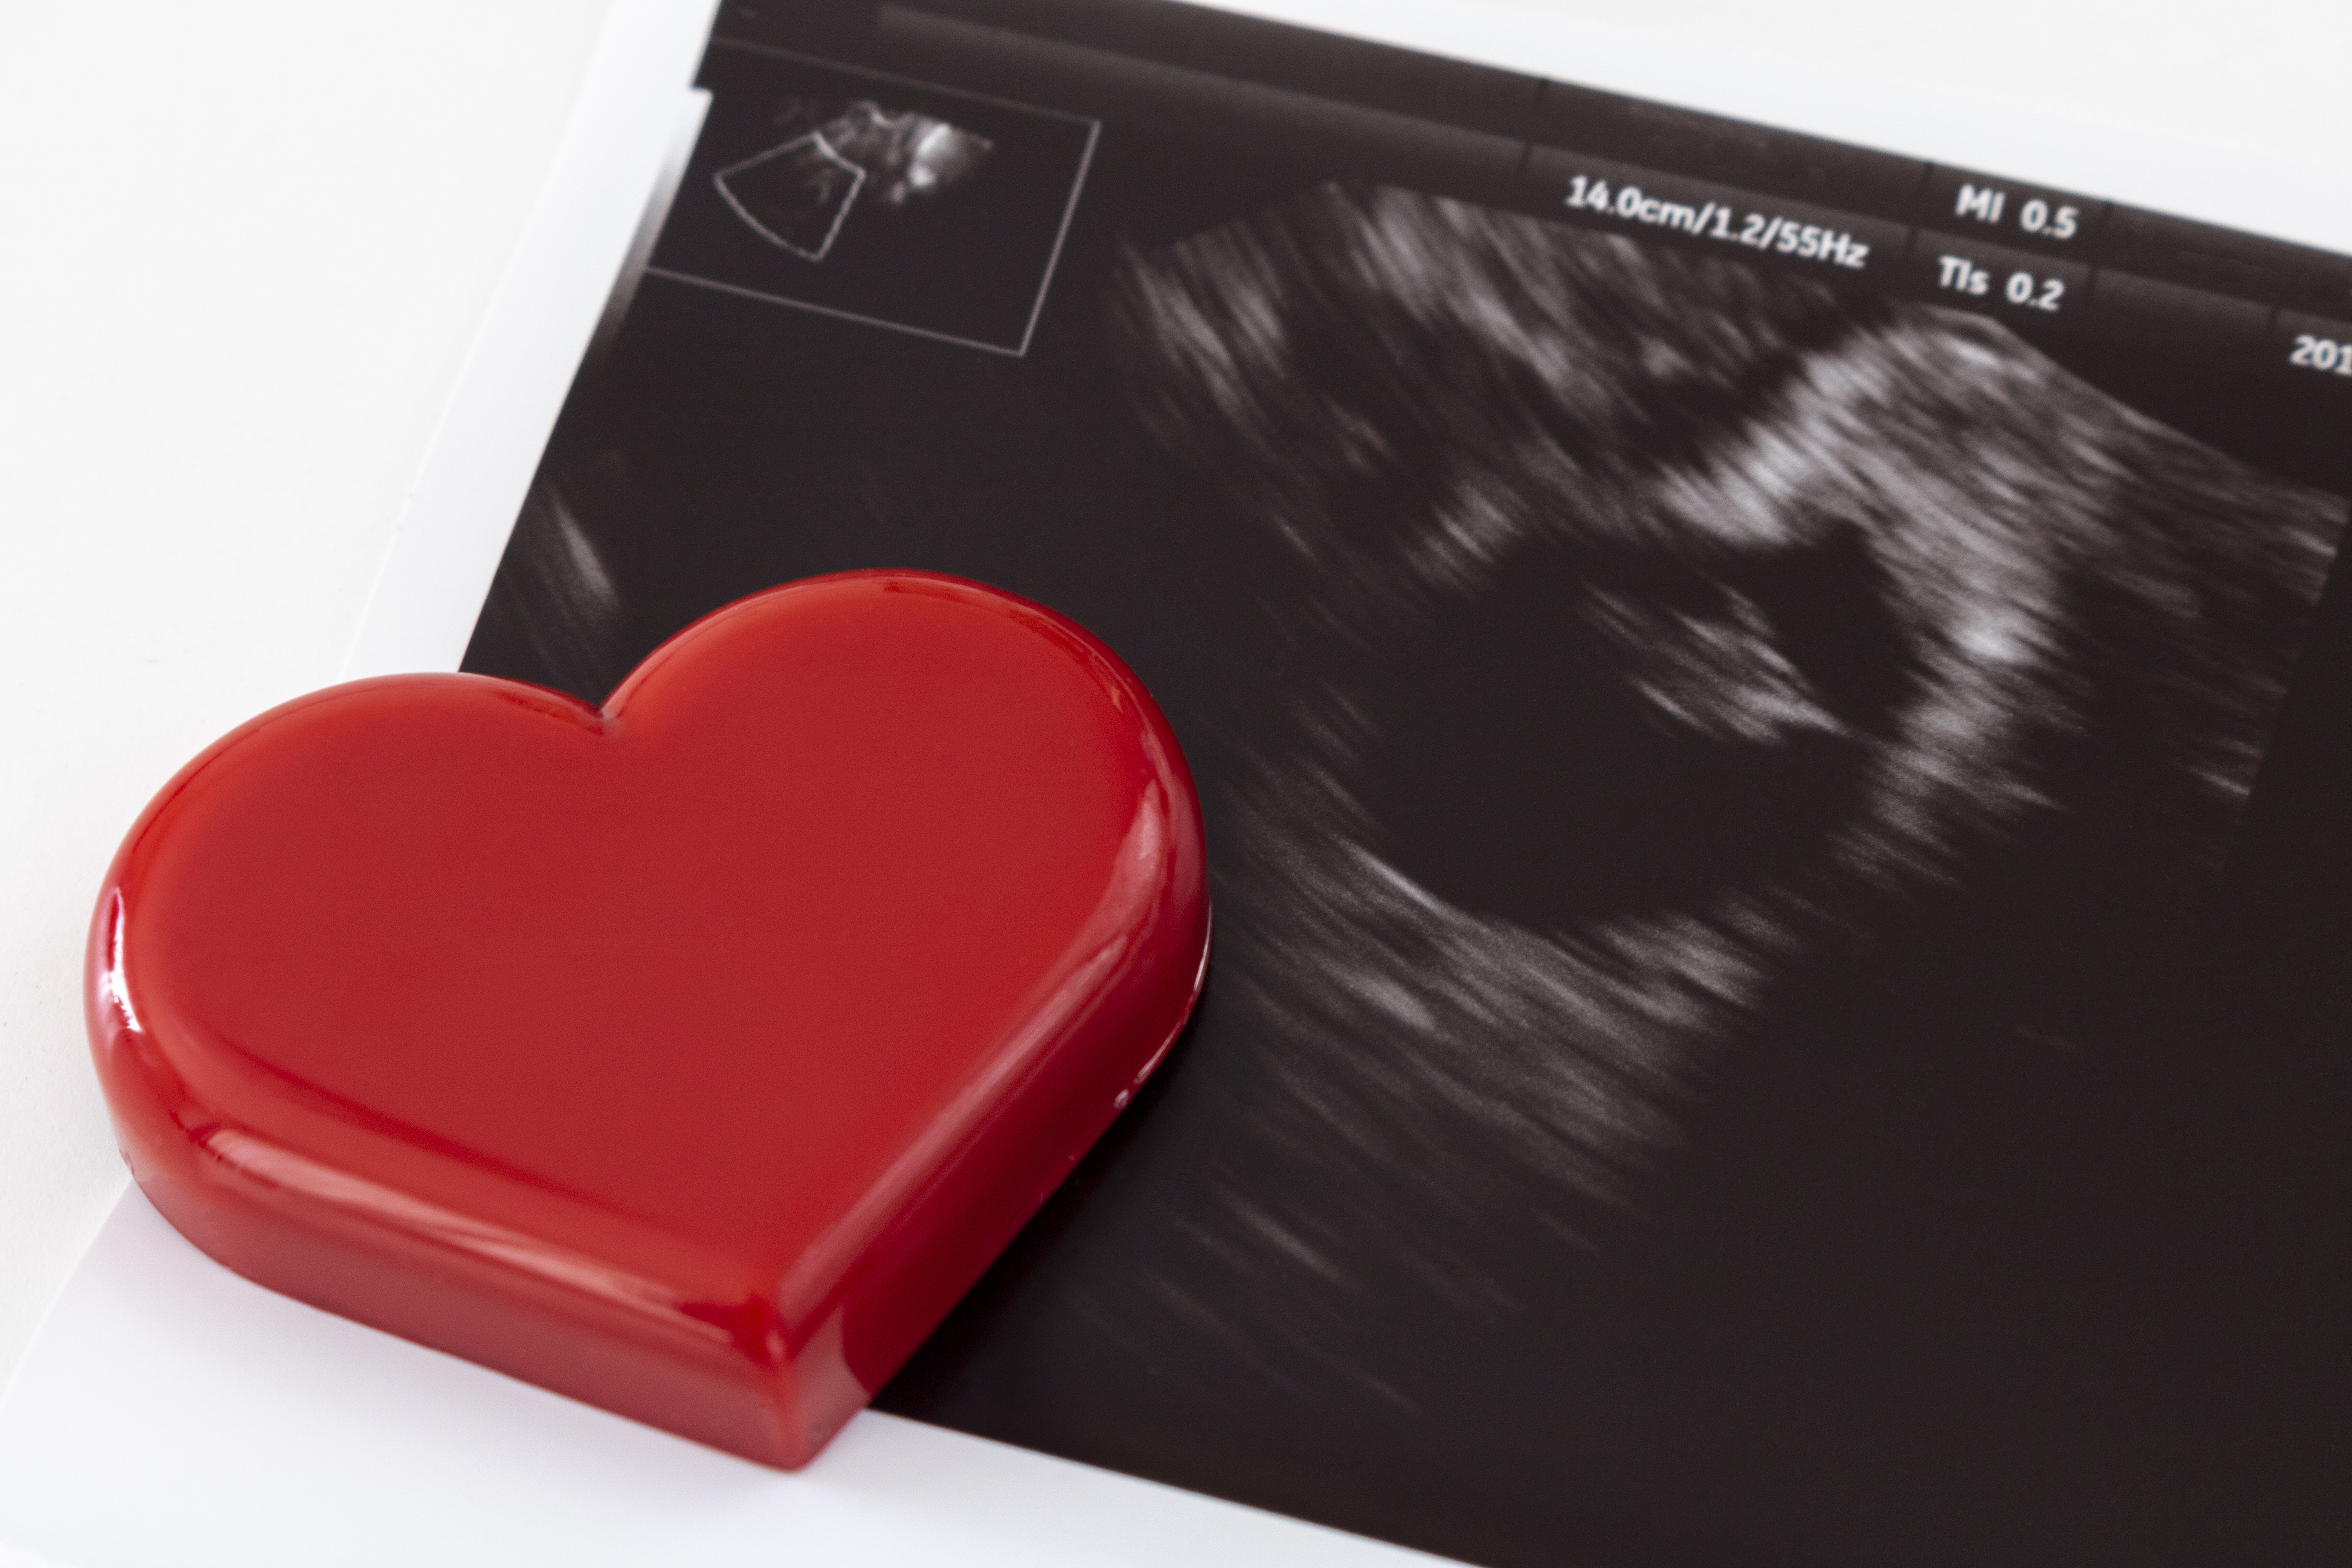 妊娠13週のエコー写真にはどんな特徴がある 胎児や妊婦の状態は Nipt 新型出生前診断 のコラム 平石クリニック